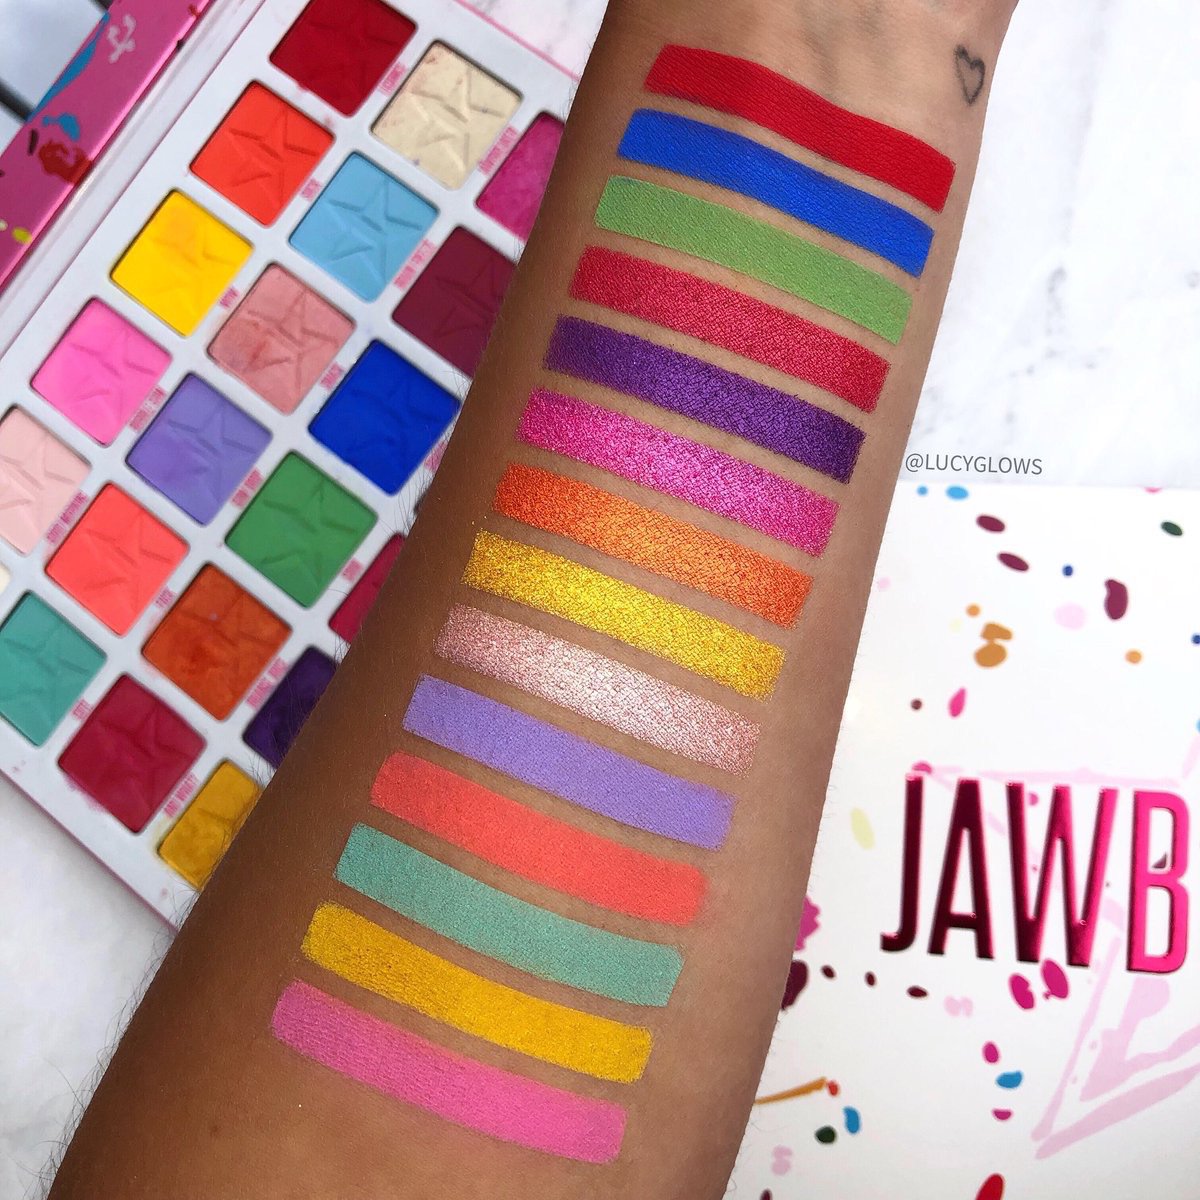 Jawbreaker palette - Jeffree Star Cosmetics